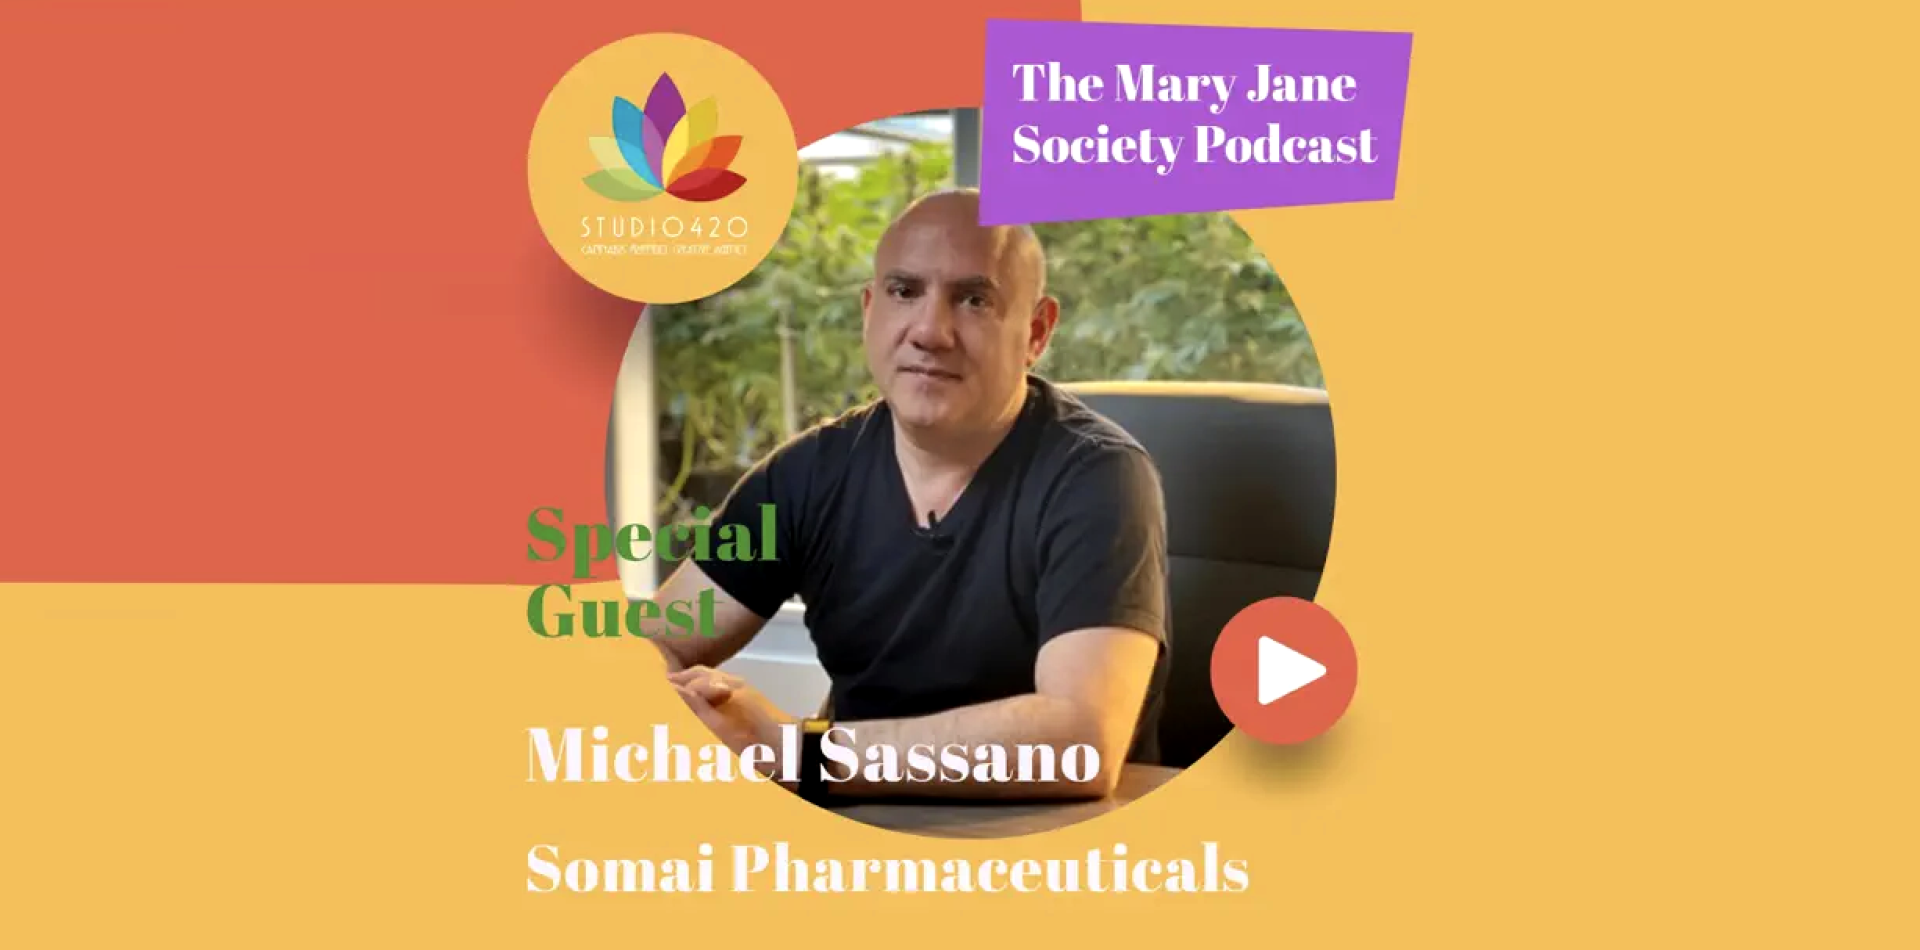 The Mary Jane Society Podcast - Aufgepasst. Europa gewinnt in der Cannabismedizin gegenüber den USA an Boden